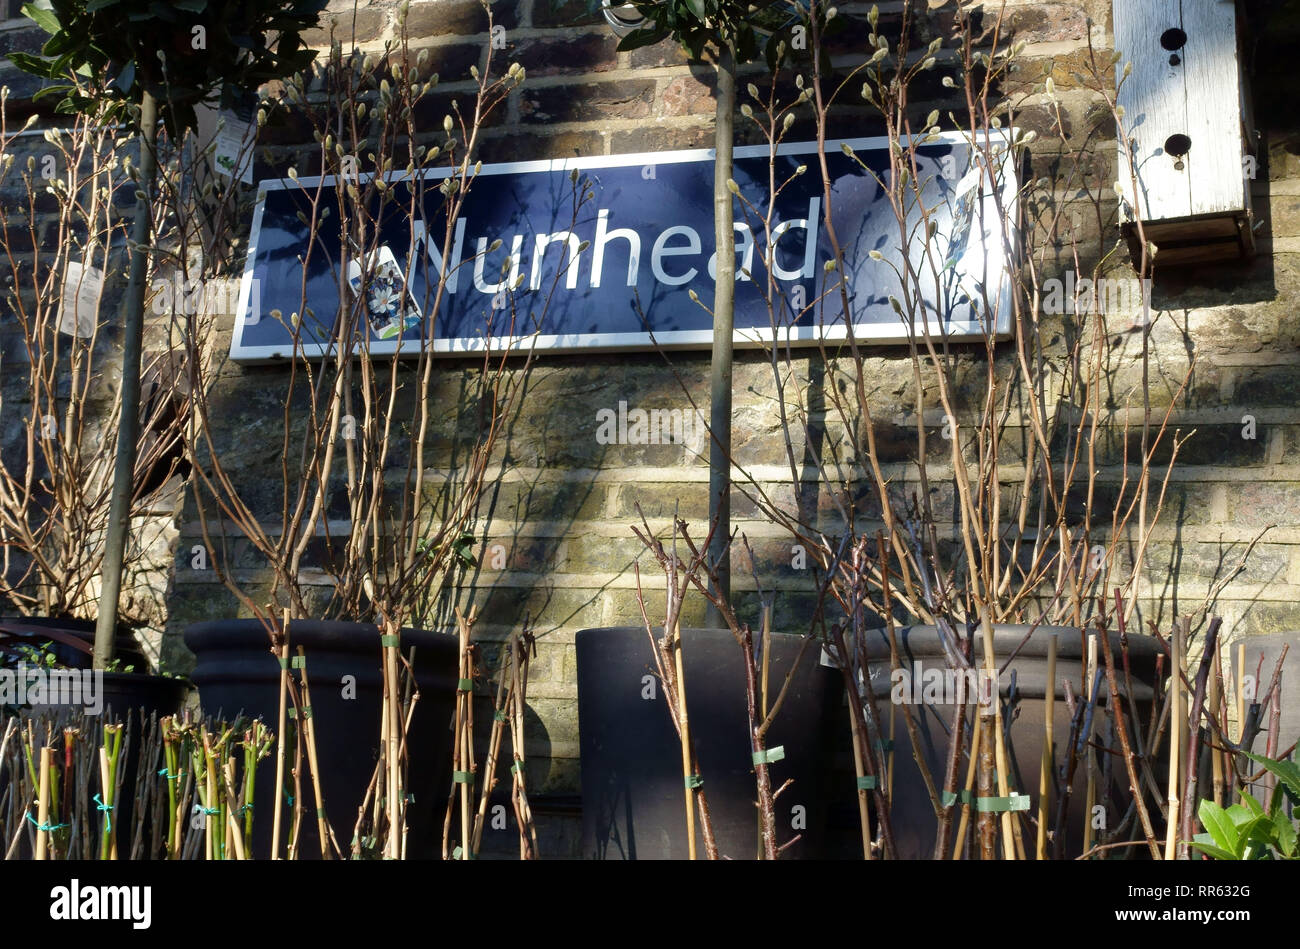 El centro de jardinería jardinero Nunhead, Nunhead, South East London Foto de stock